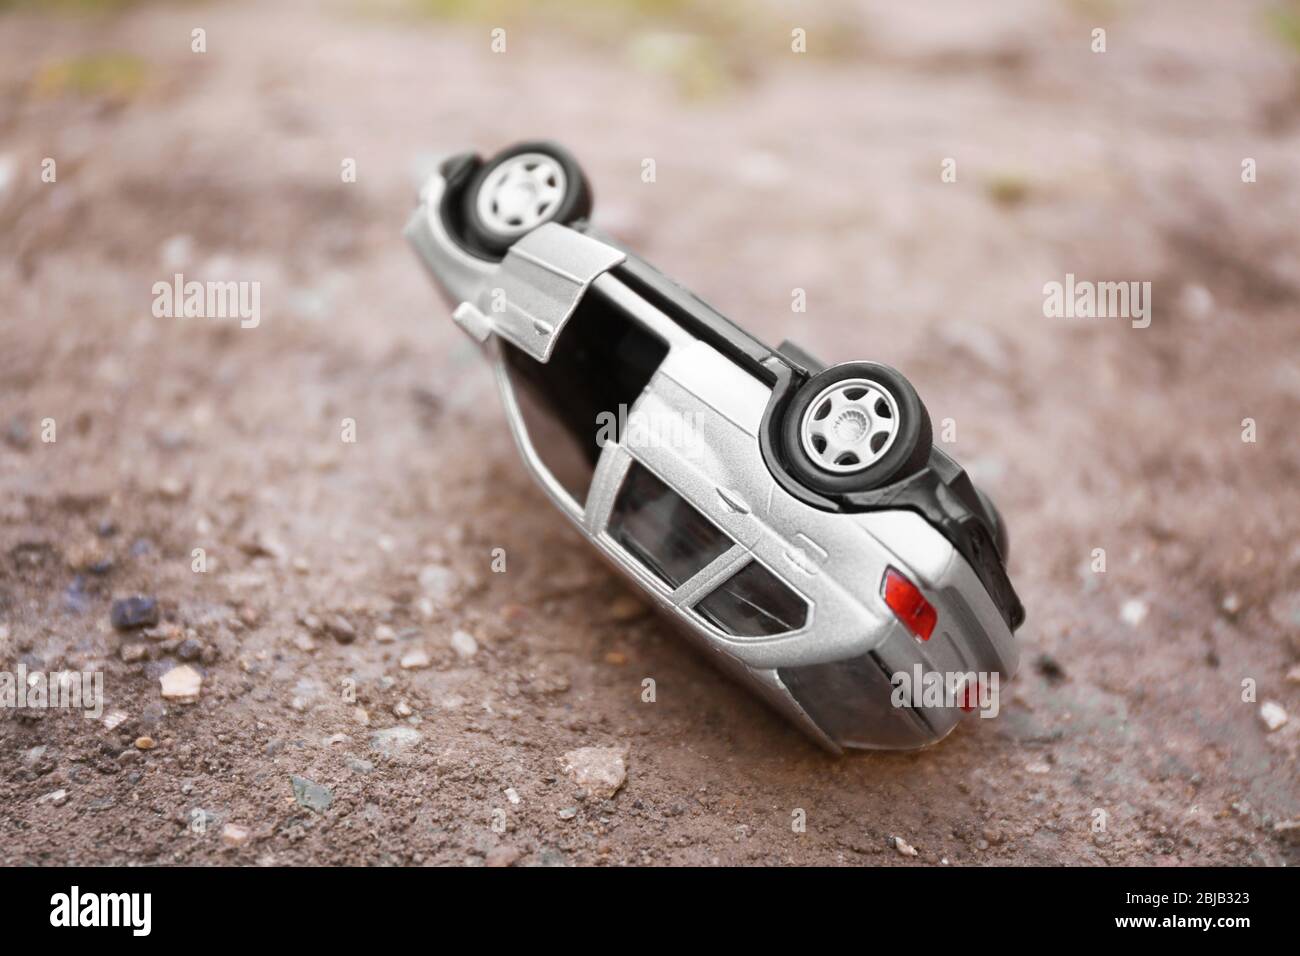 Spielzeug Auto crash Stockfotografie - Alamy